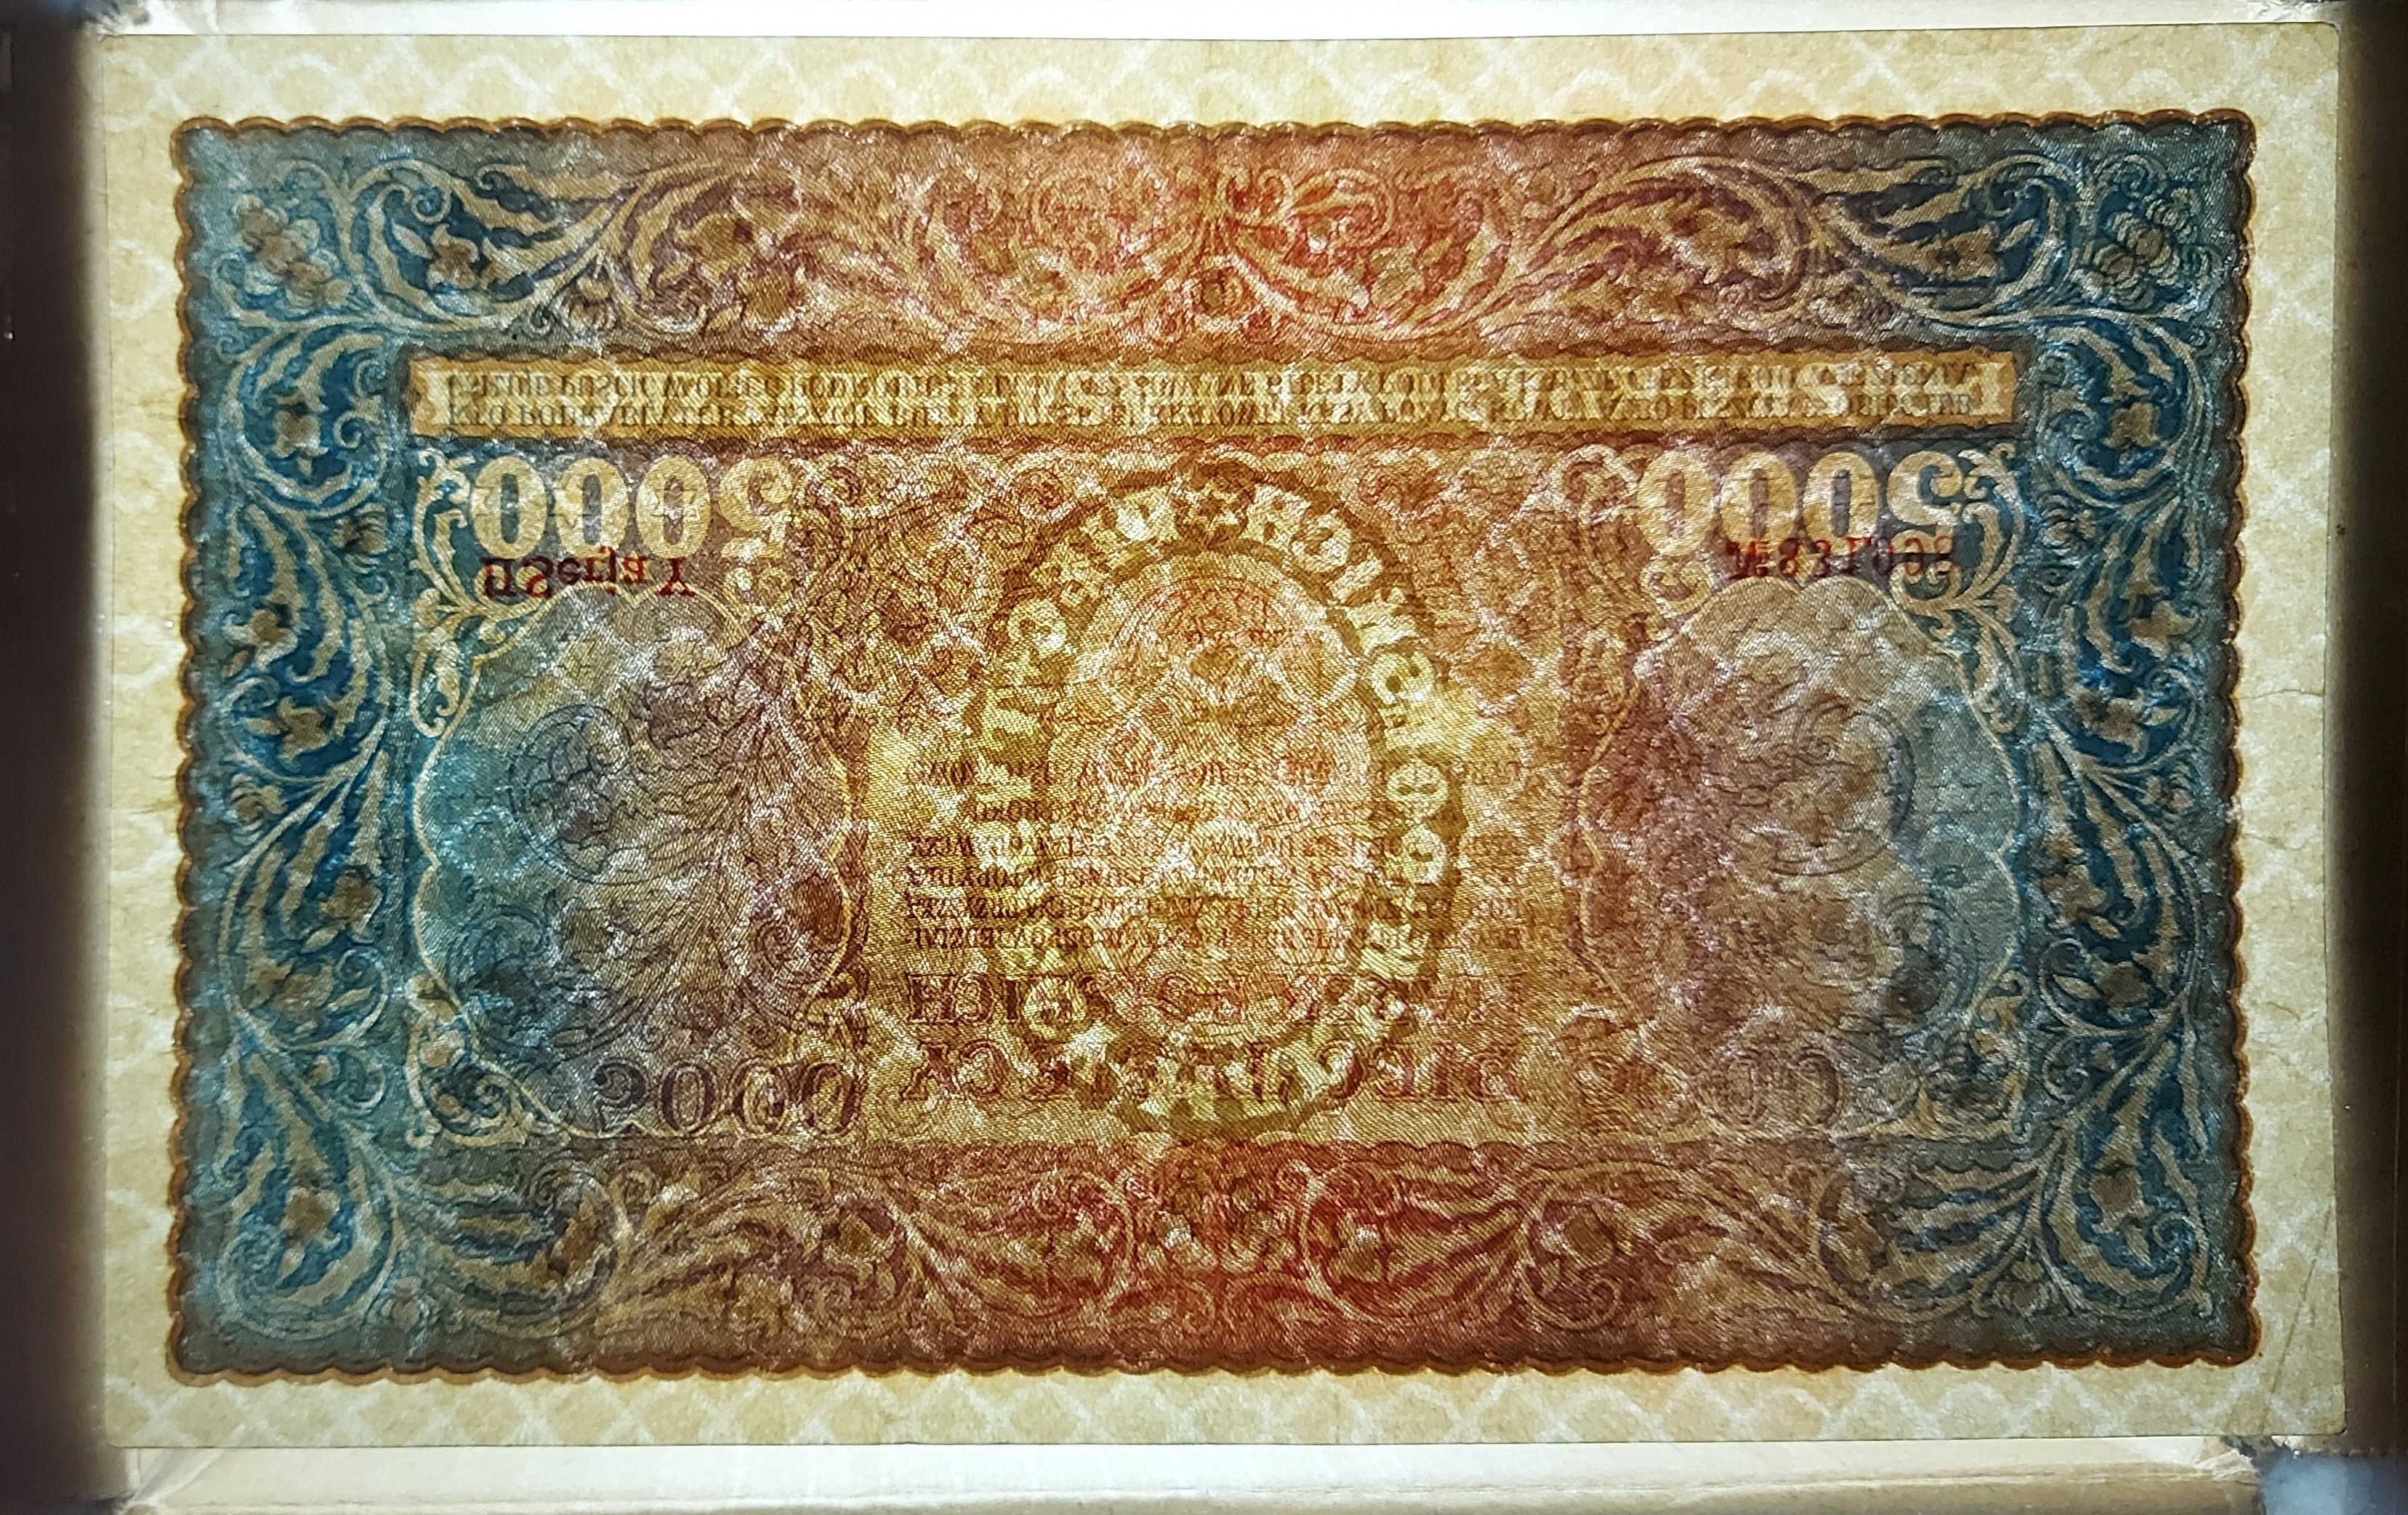 Banknot 5000 marek polskich z 1920 roku.